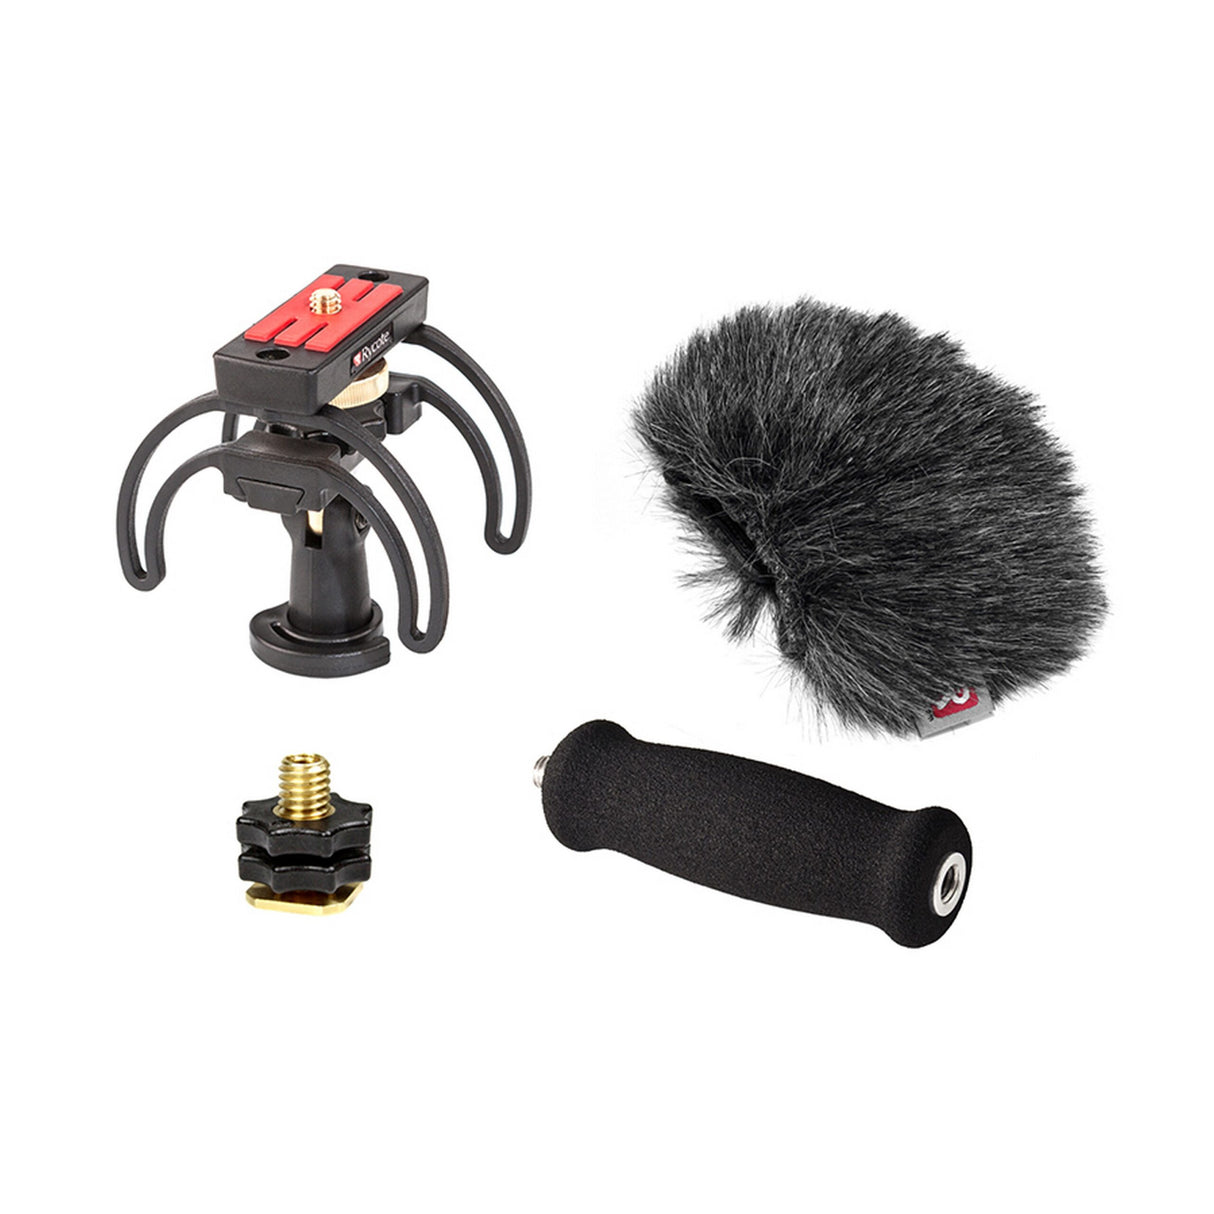 Rycote Audio Kit for Tascam DR-40